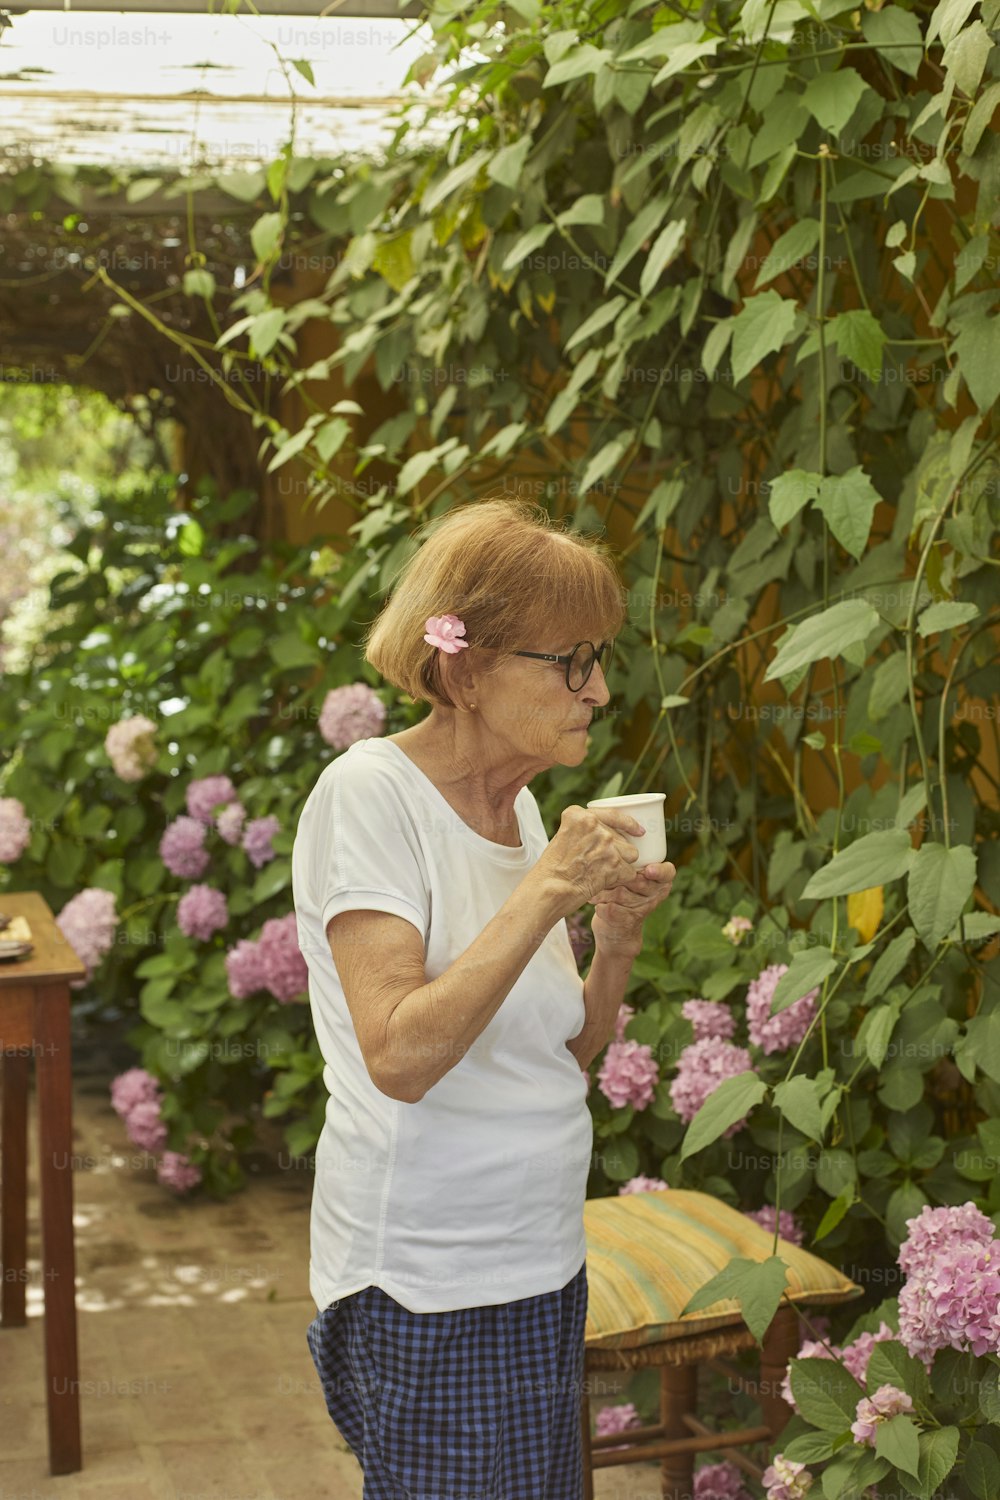 Una mujer parada en un invernadero sosteniendo una taza